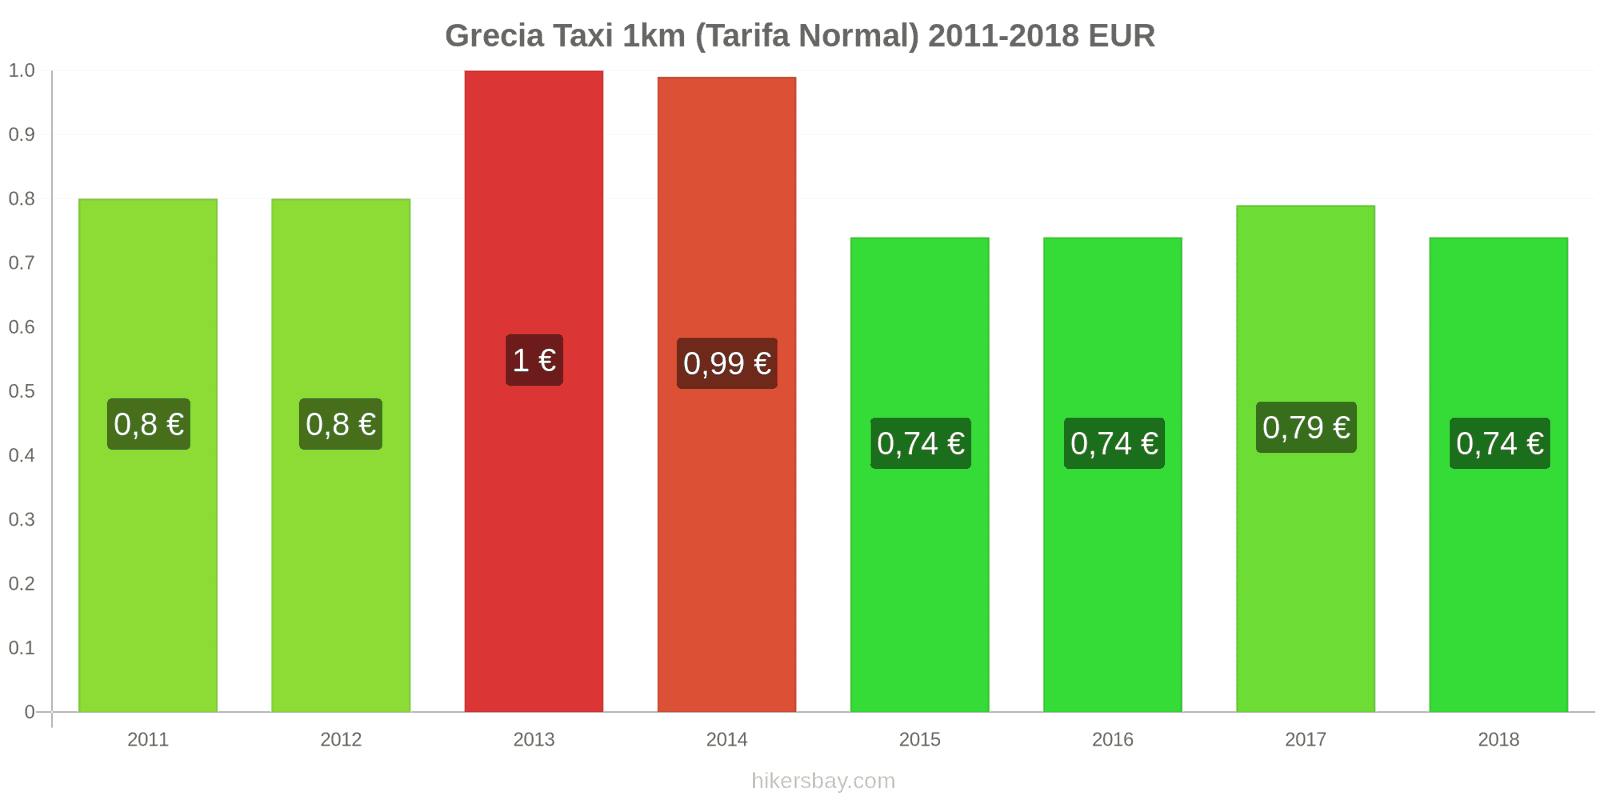 Grecia cambios de precios Taxi 1km (tarifa normal) hikersbay.com